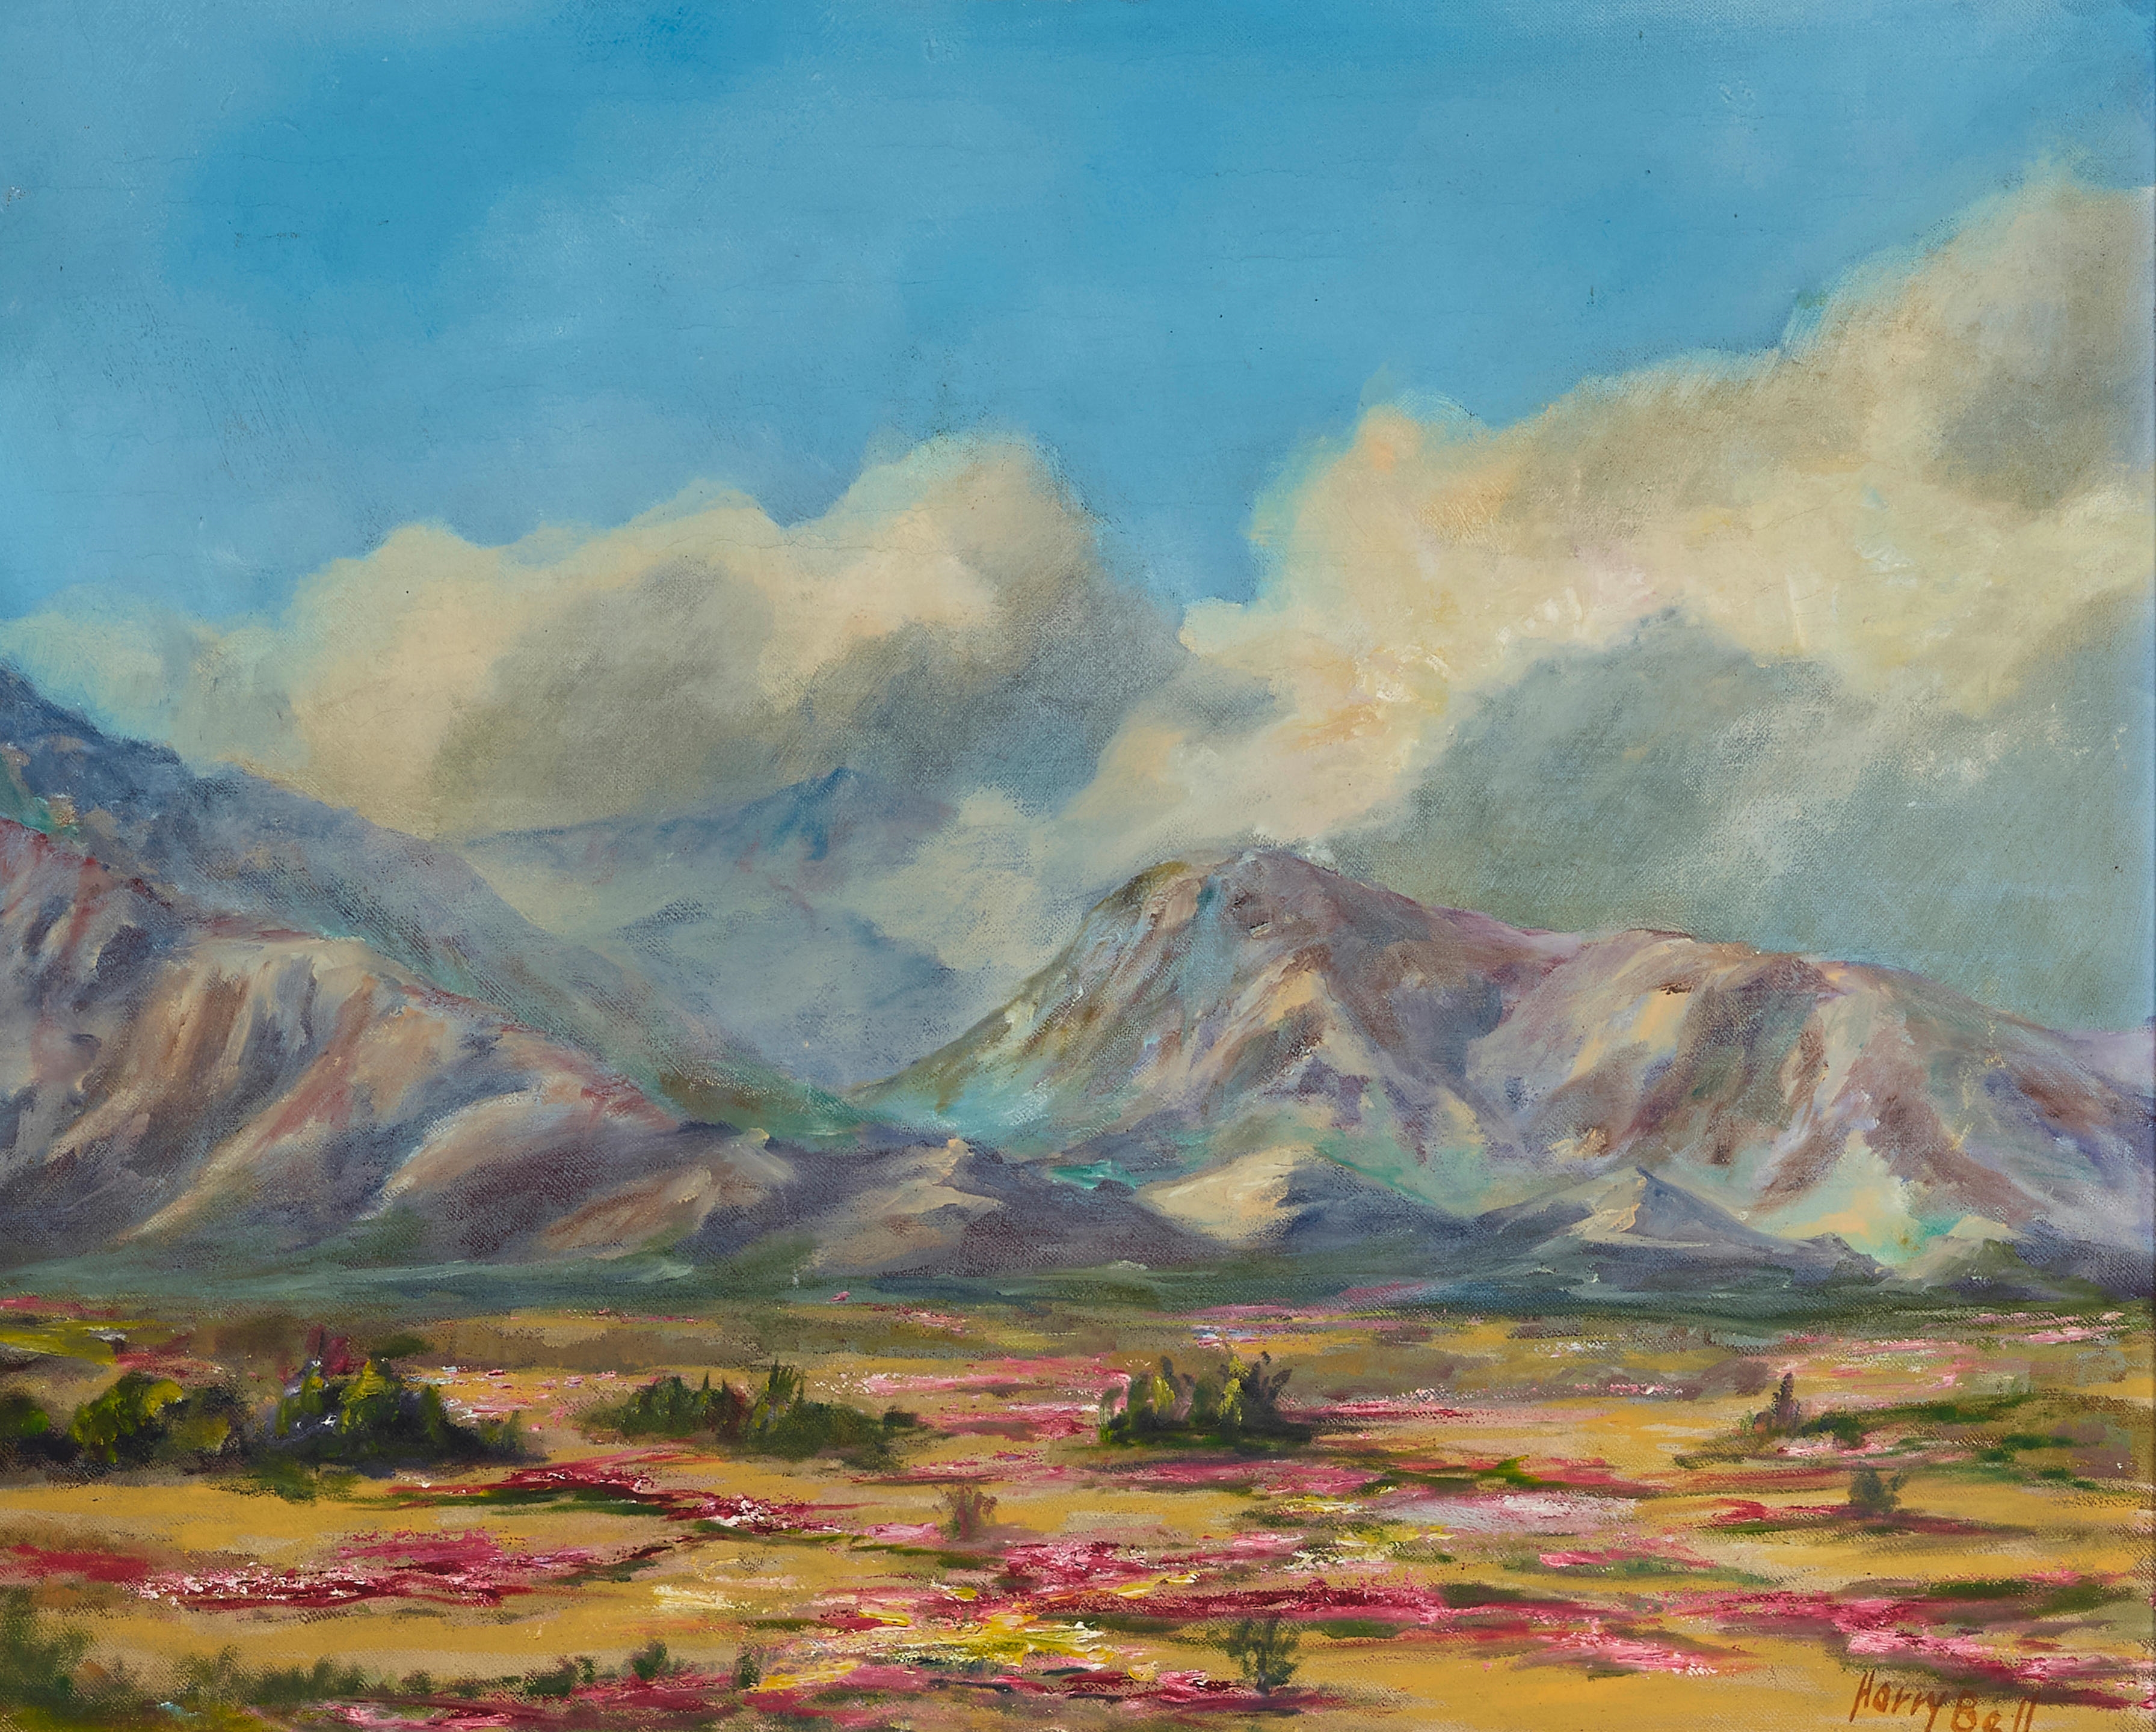 Harry Bell, Desert in Bloom